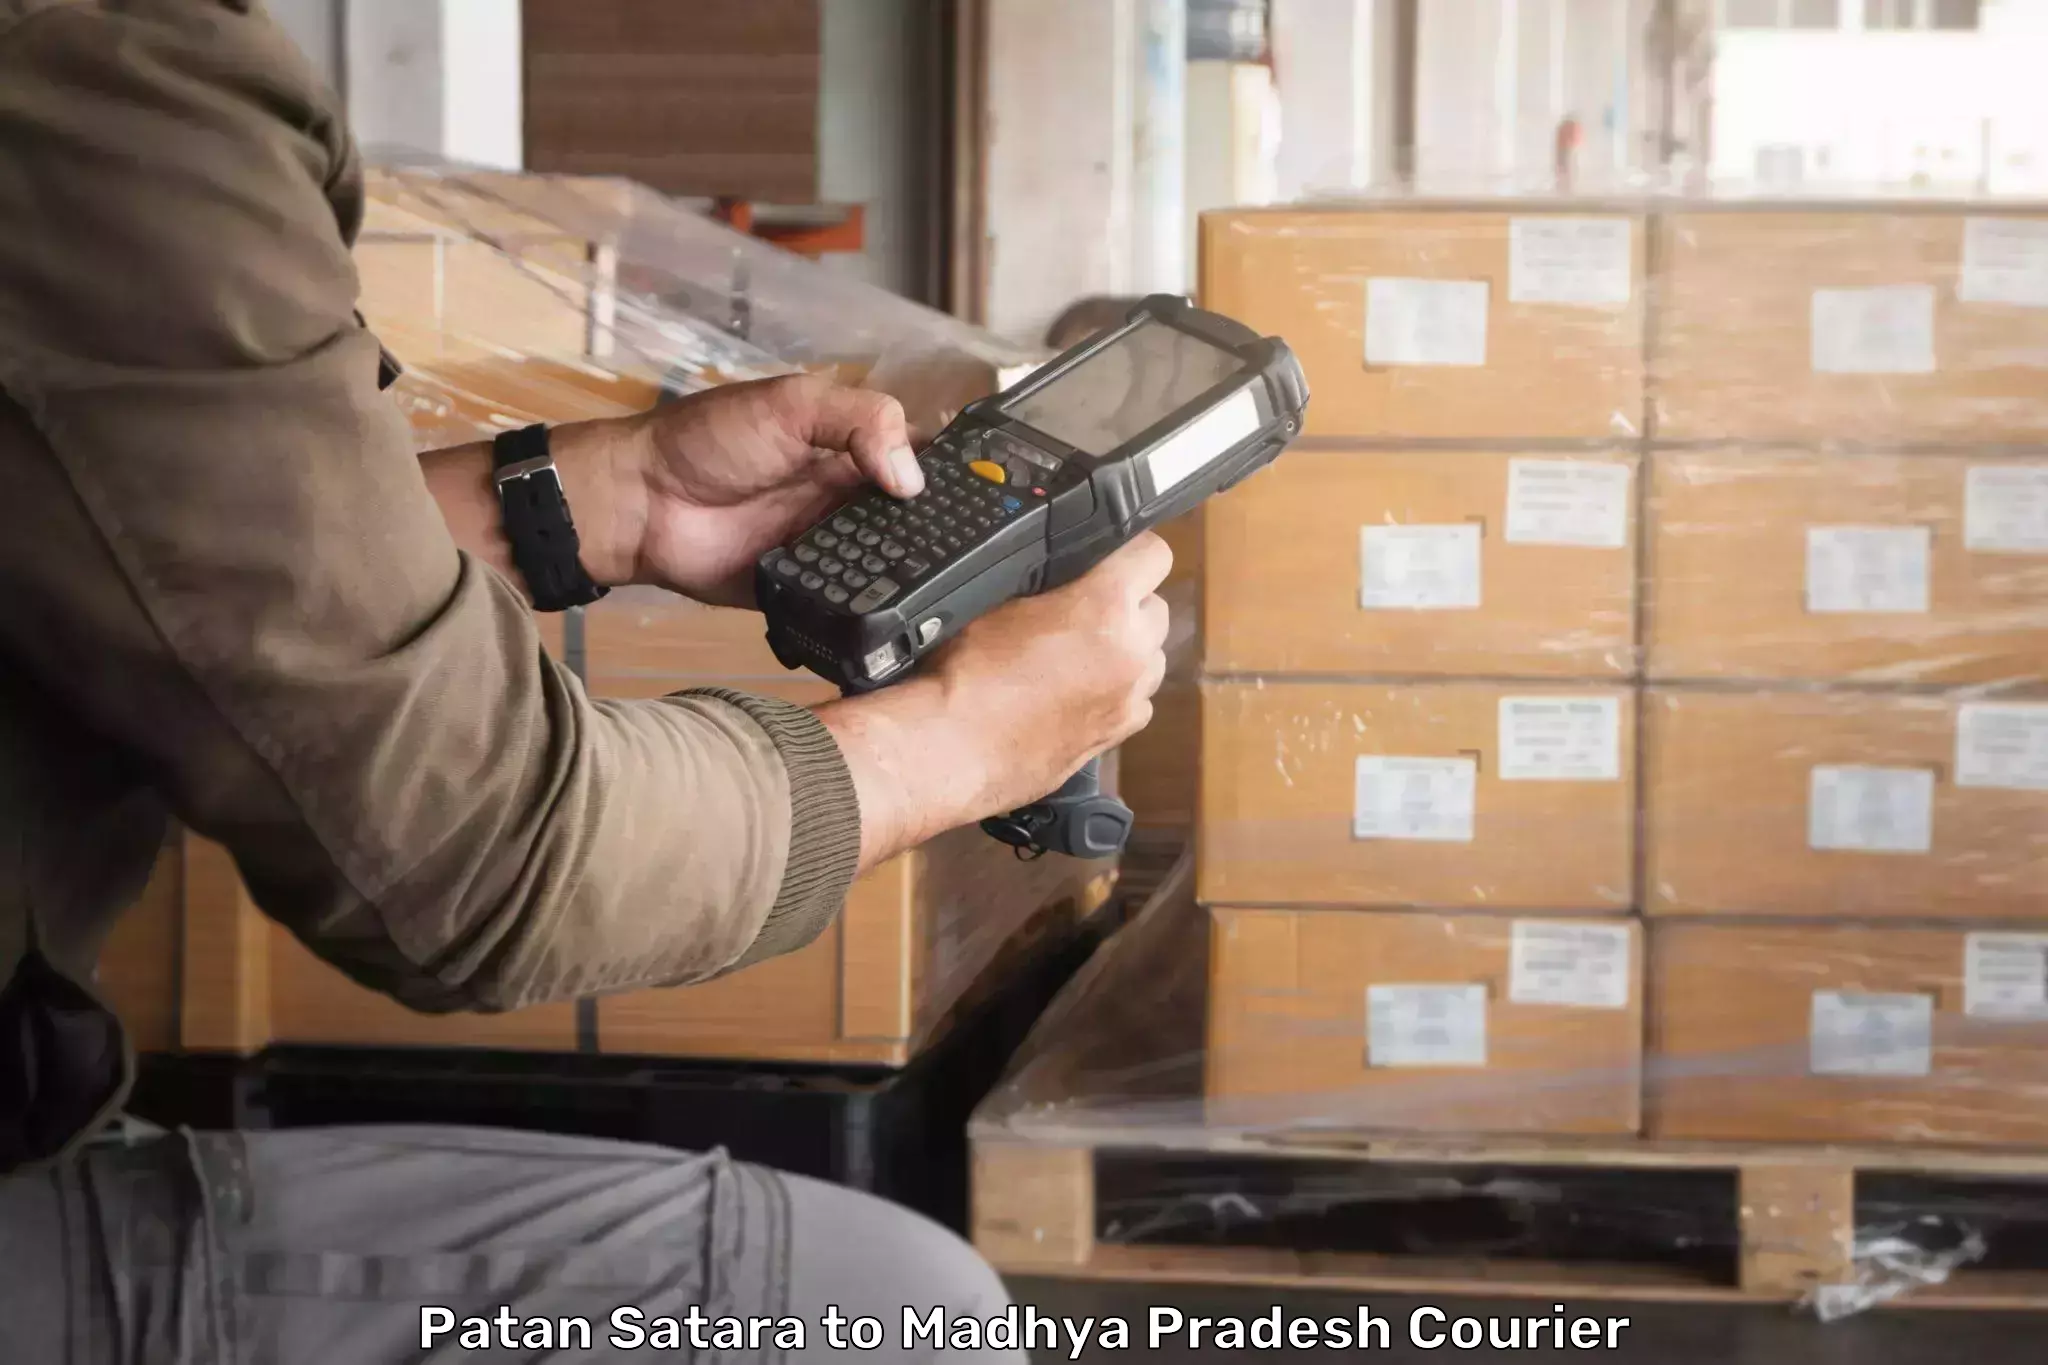 Nationwide parcel services Patan Satara to Jaitwara